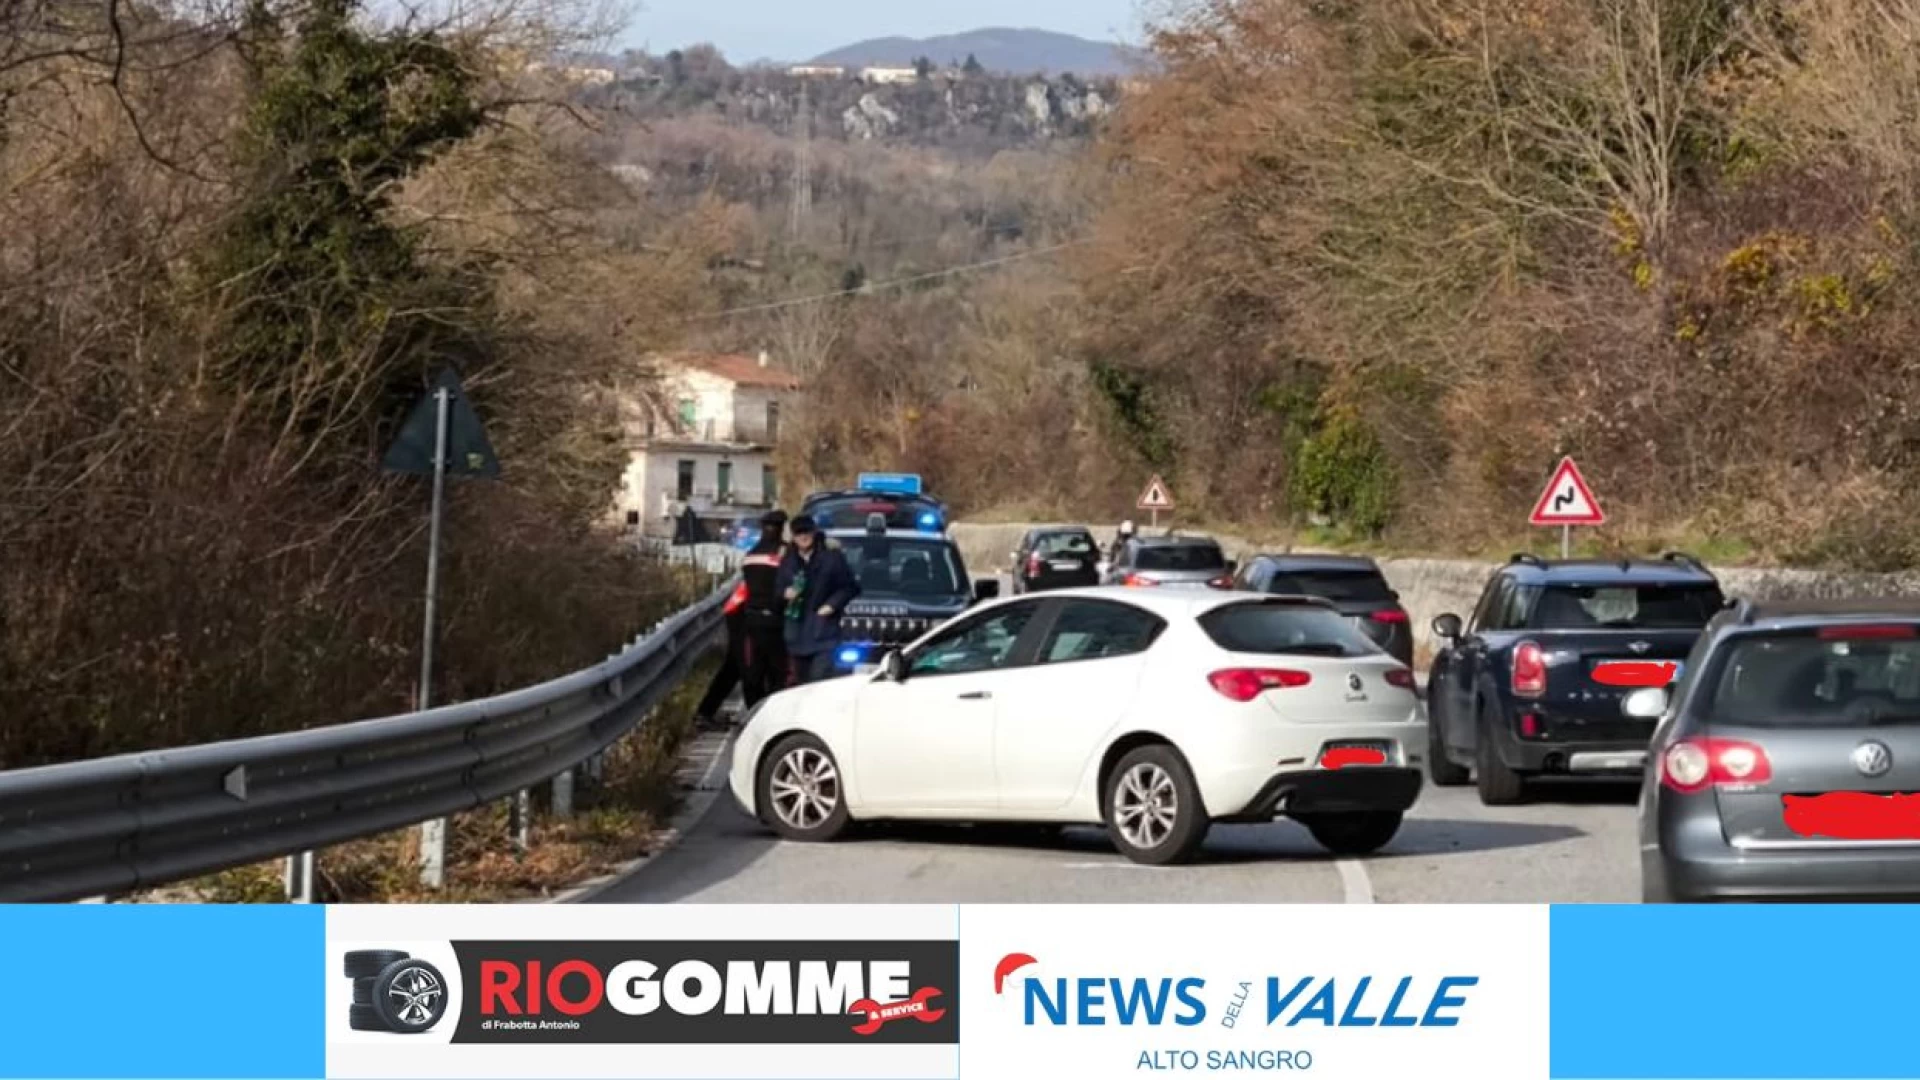 Colli a Volturno: auto esce fuori strada sulla statale 158. Conducente illeso e traffico in tilt.